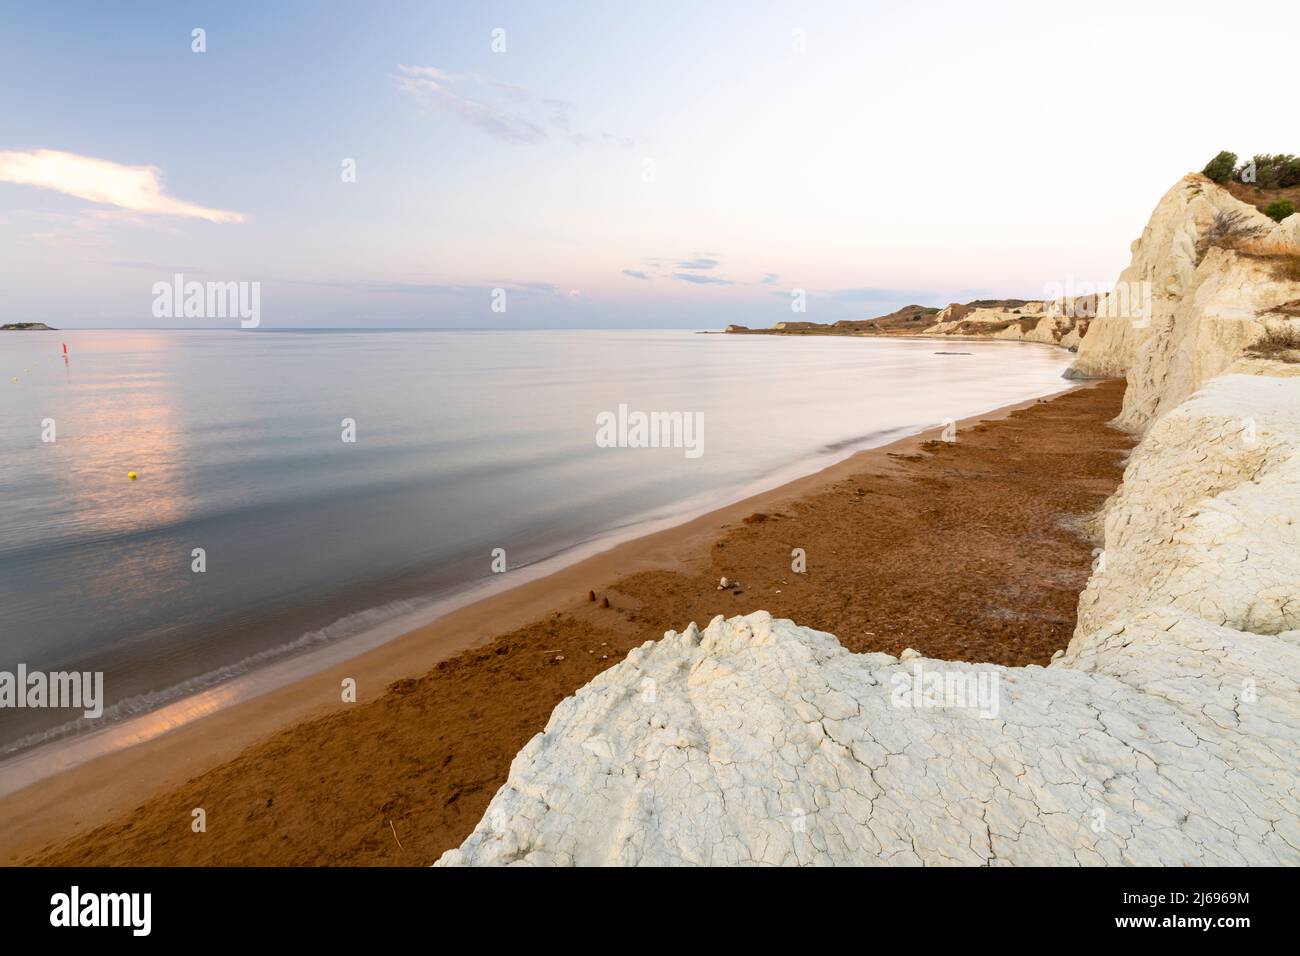 Mare calmo all'alba incorniciato da scogliere calcaree che si affacciano sulla sabbia dorata della spiaggia di Xi, Cefalonia, Isole IONIE, Isole Greche, Grecia, Europa Foto Stock